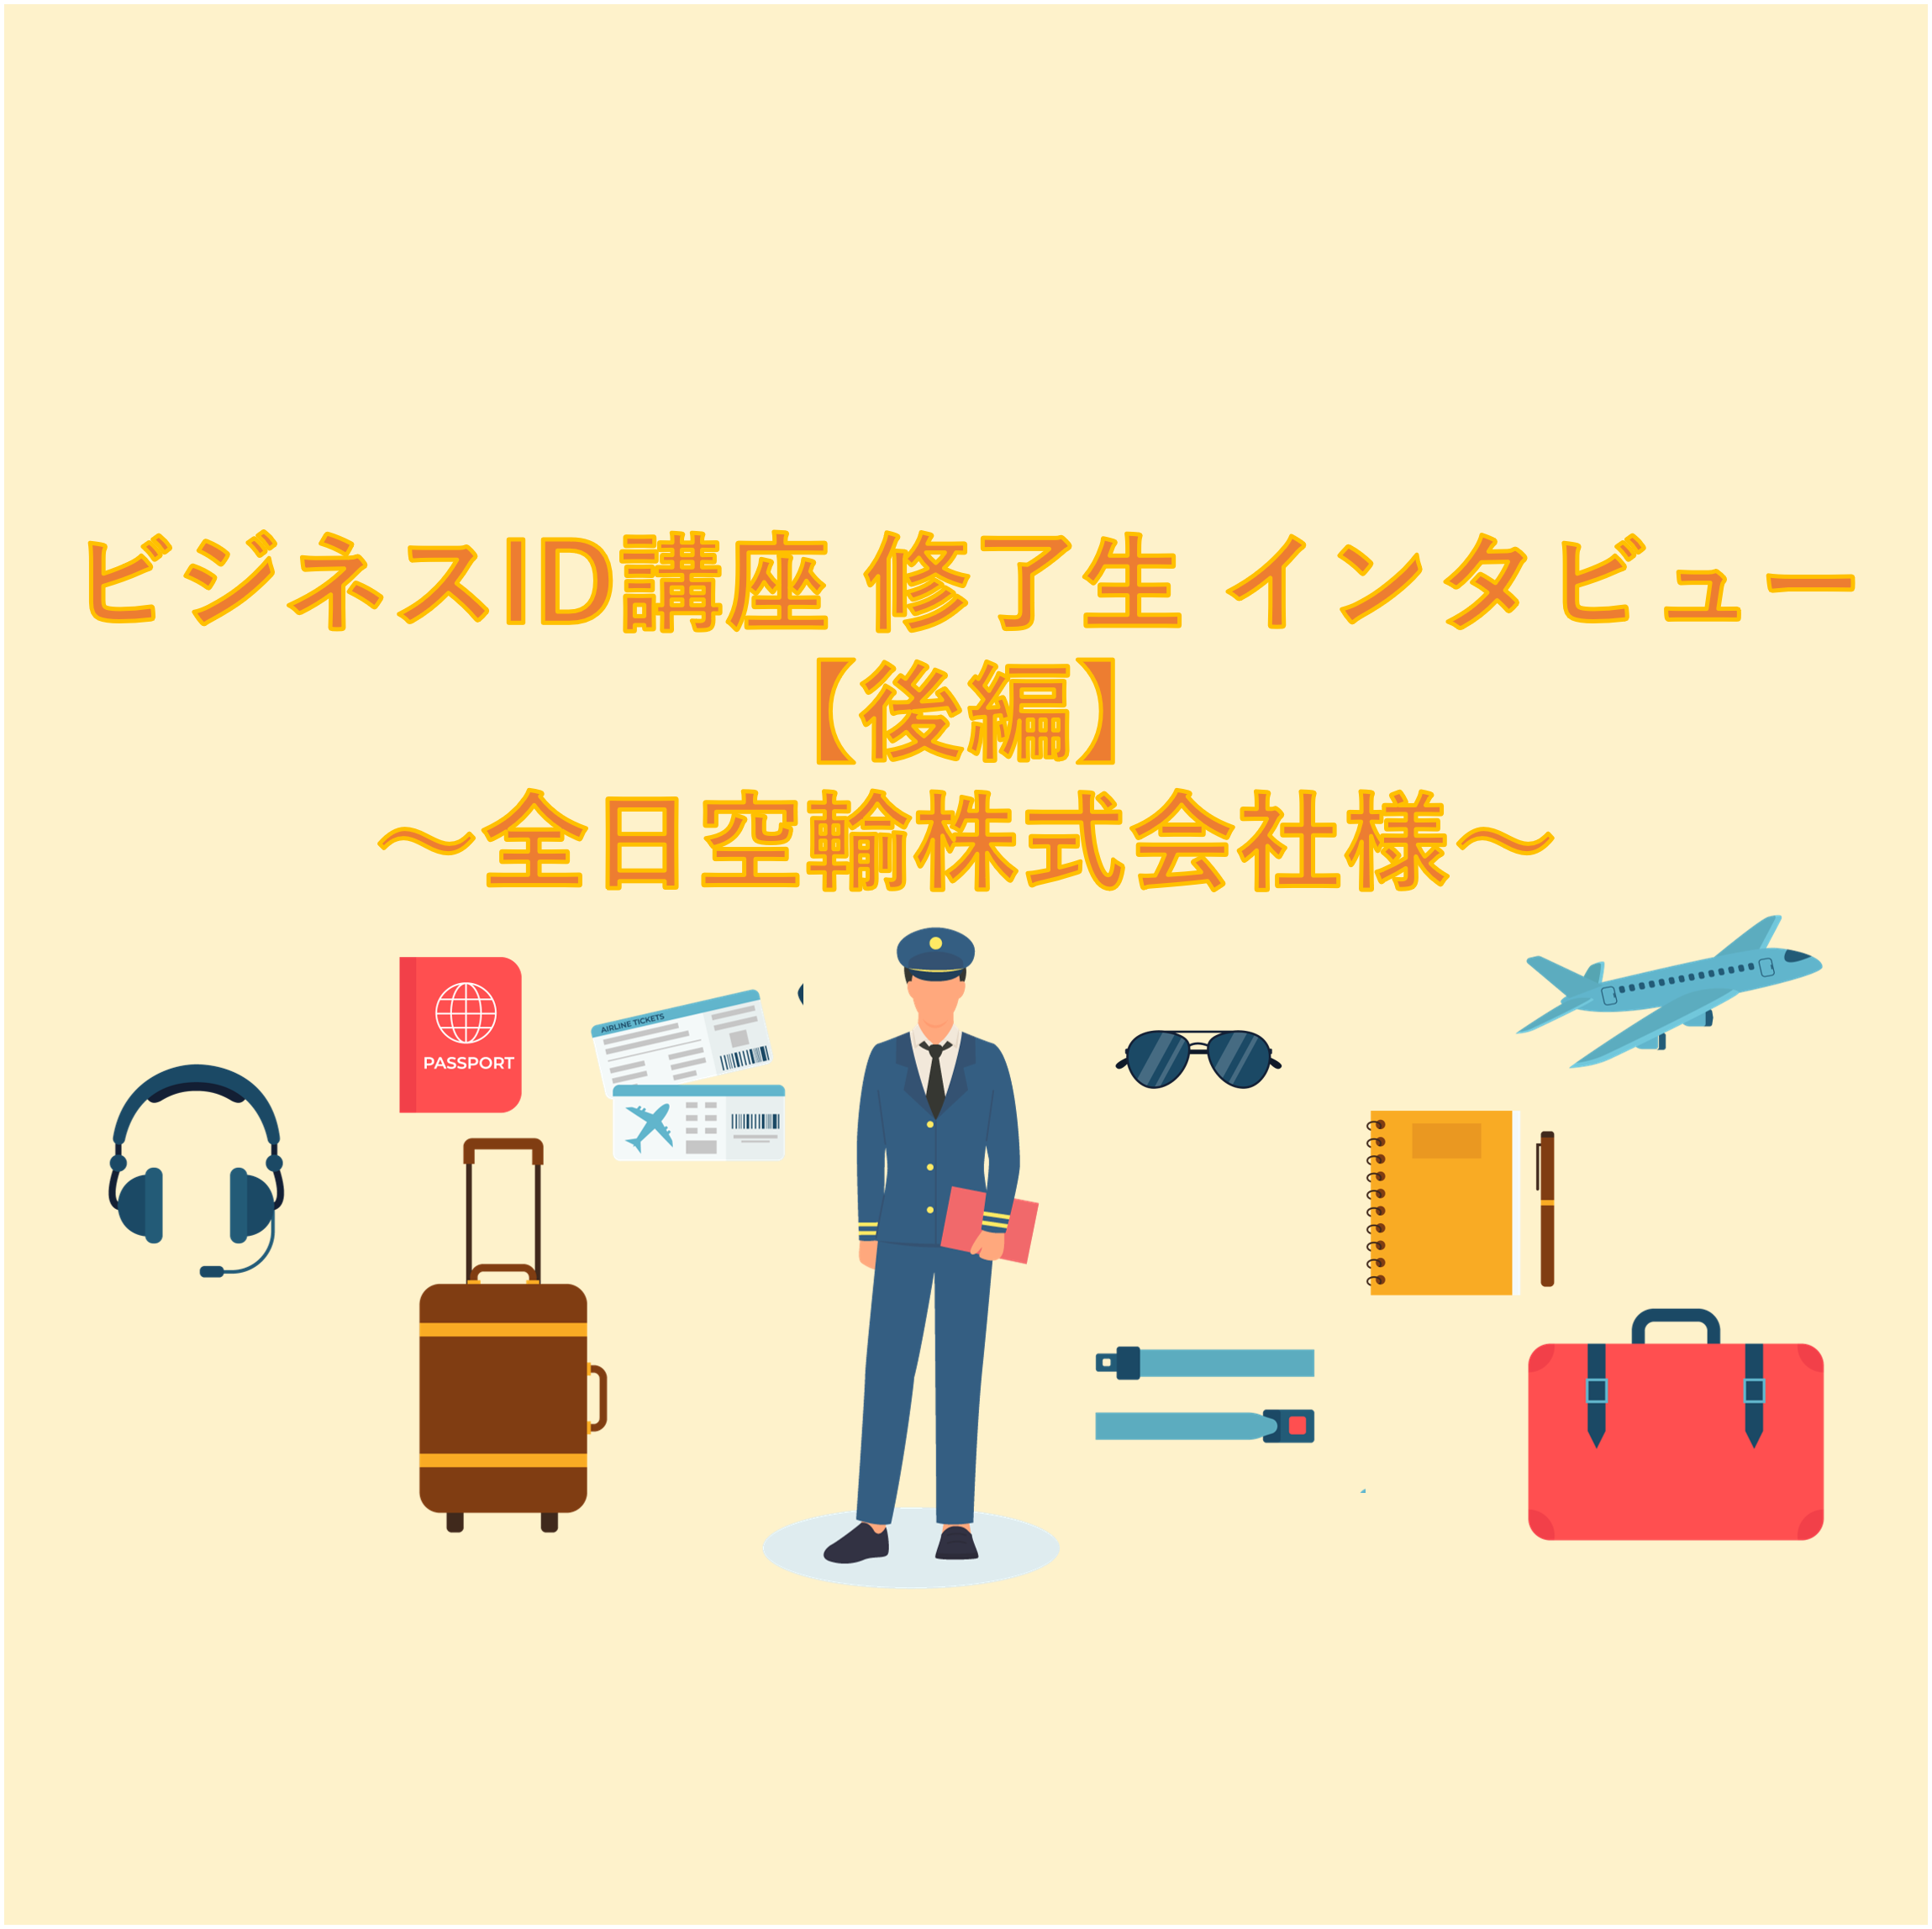 ビジネスID講座 修了生 インタビュー 【後編】～全日本空輸株式会社様～